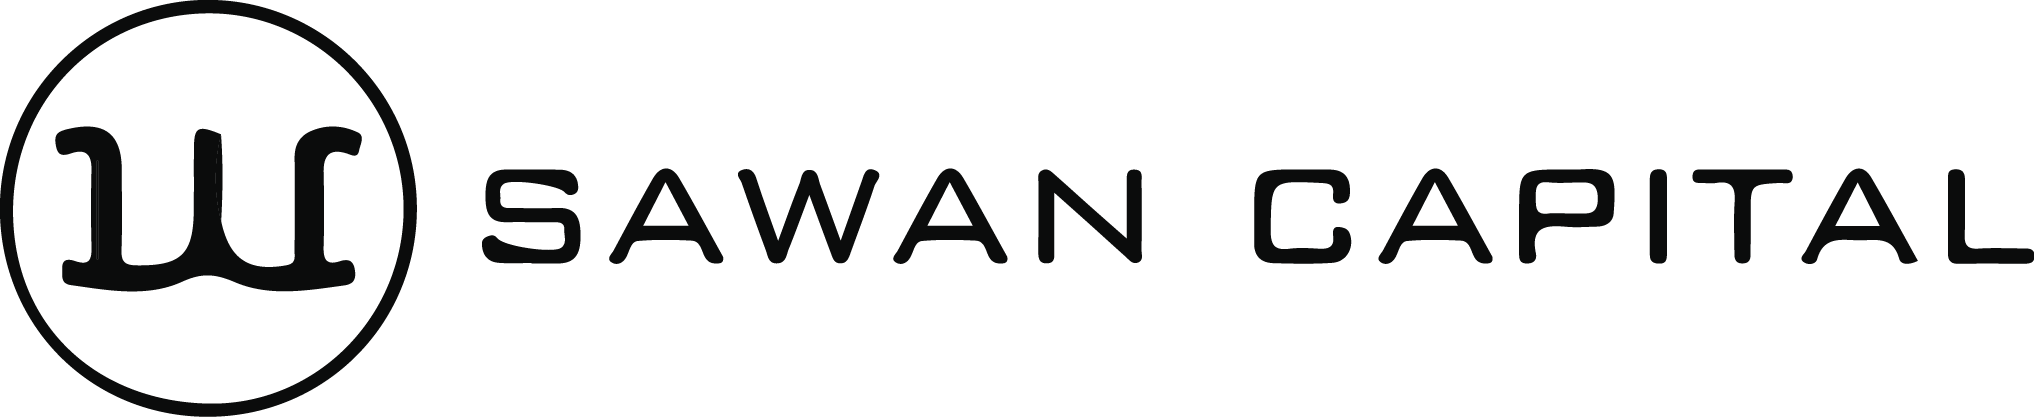 Logo Sawan Capital - Cliente Auditecnic